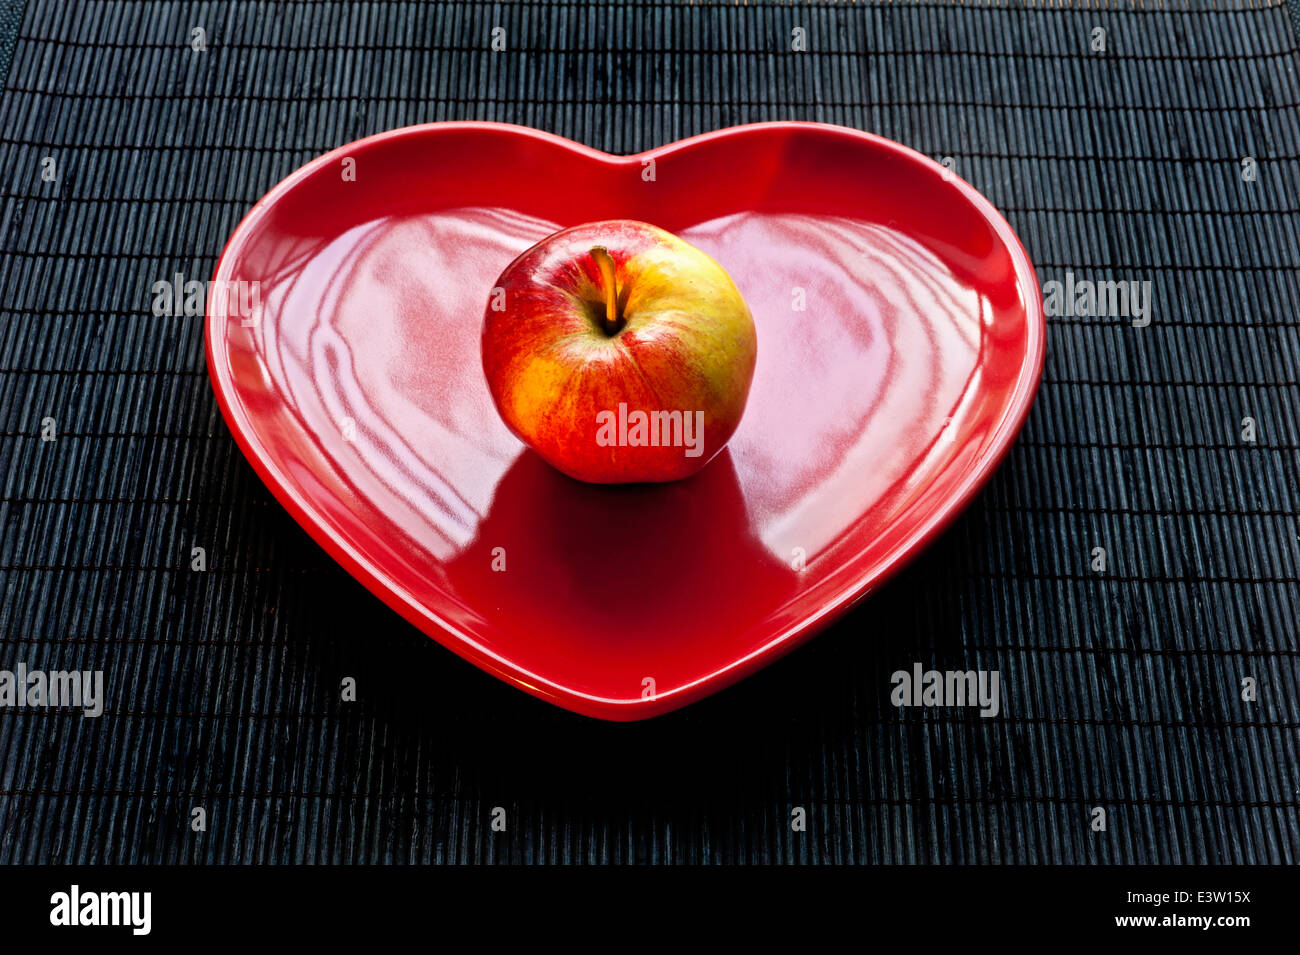 Gala Apfel auf rotes Herz geformte Platte, gesunde frische Ernährung Regime. Stockfoto